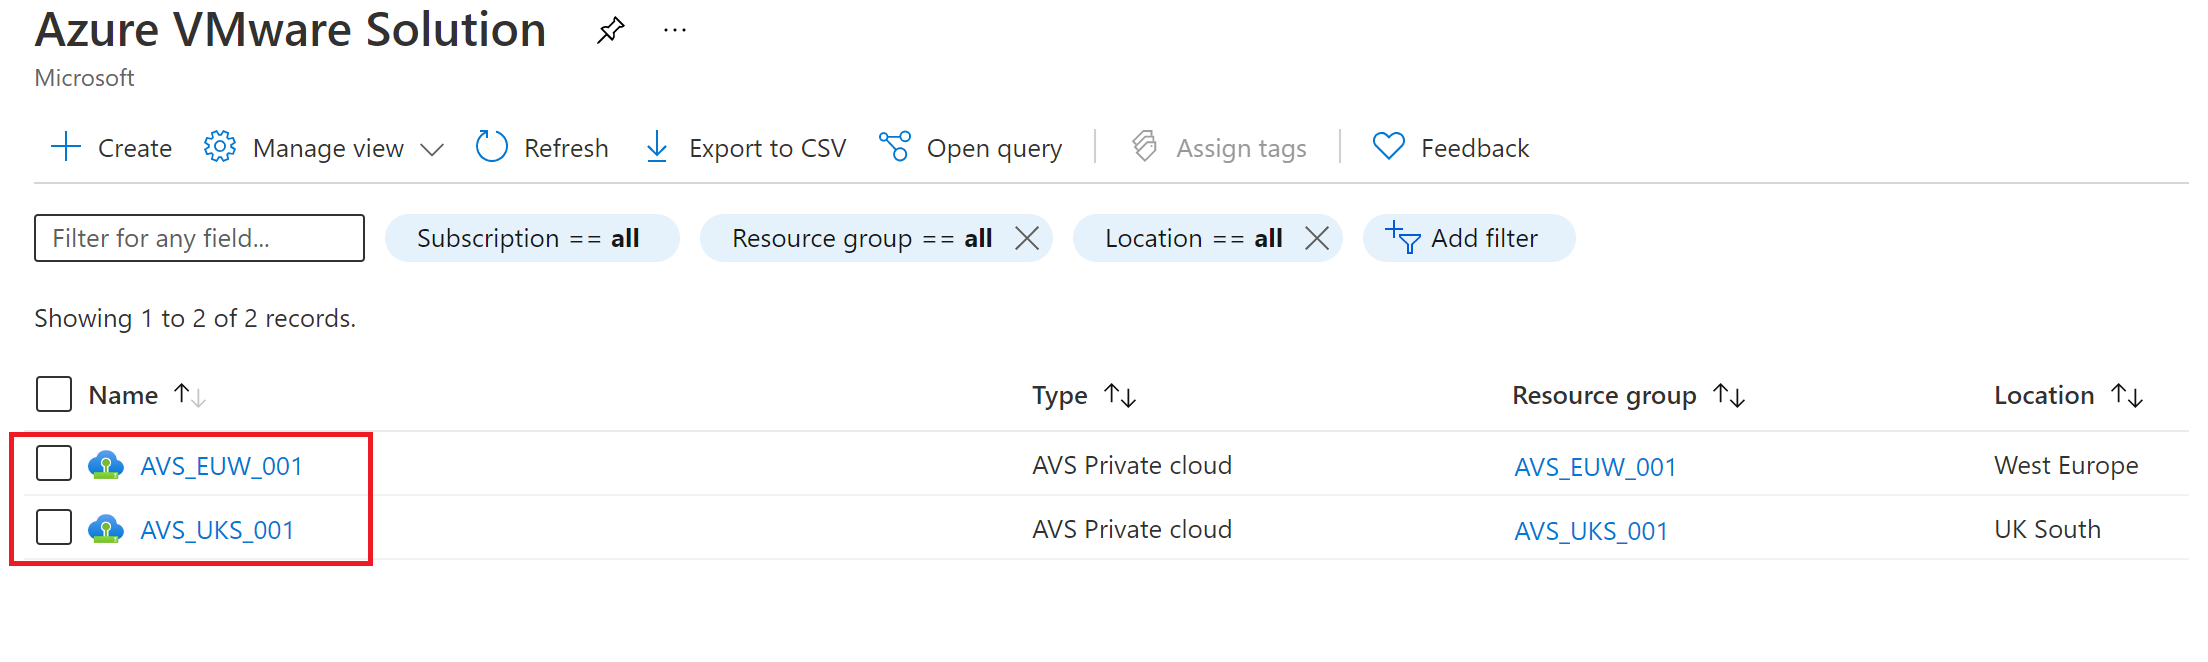 Snímek obrazovky znázorňující dva privátní cloudy Azure VMware Solution v samostatných oblastech